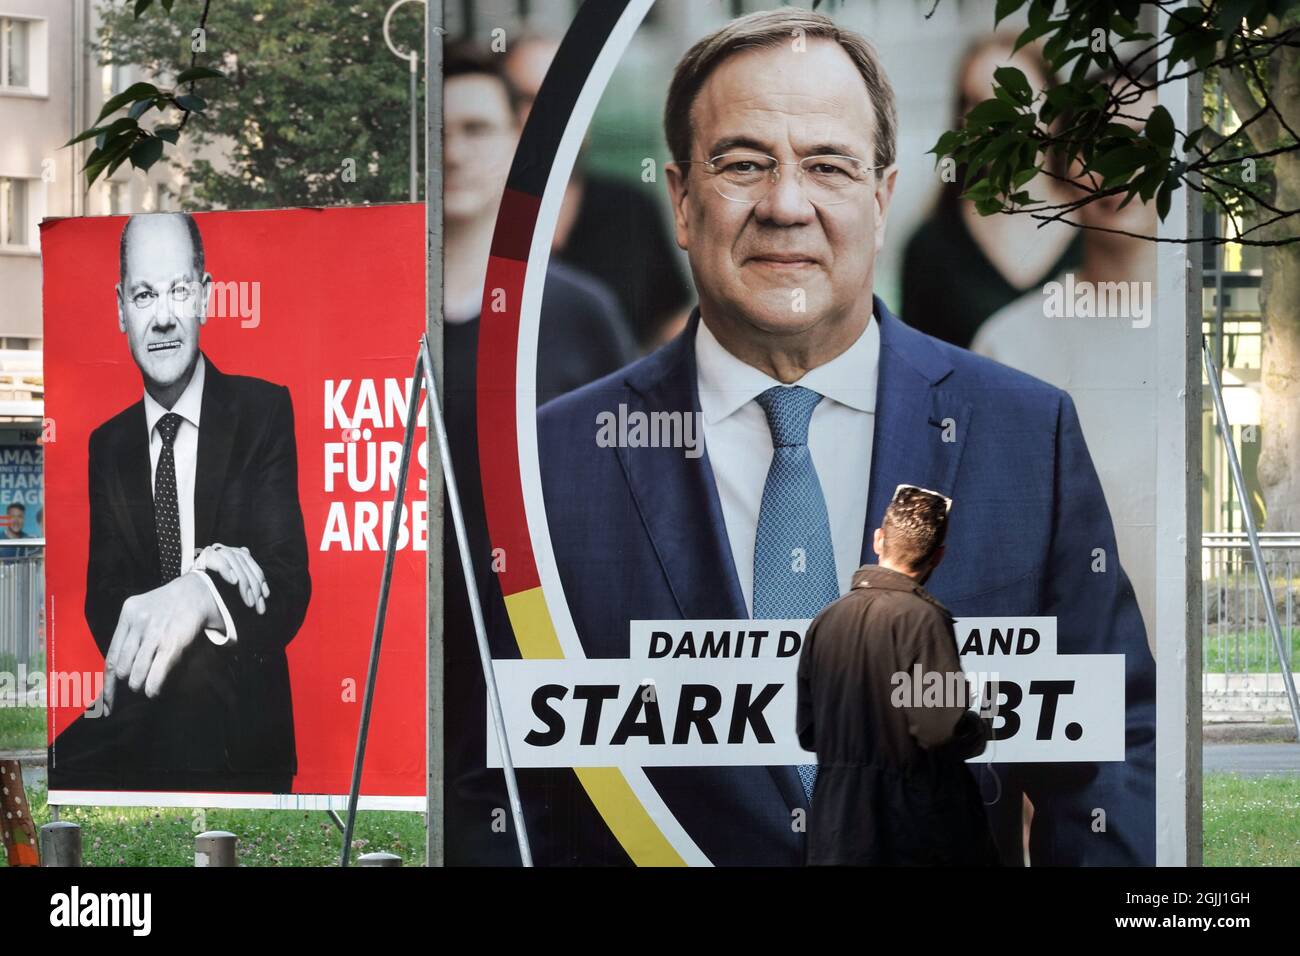 Gloßplakate zur Bundestagswahl am 26.9.2021 mit den beiden Kanzlerkandidaten Armin Laschet CDU (vorne) und Olaf Scholz SPD in Dortmund, 09.09.2021 Stock Photo